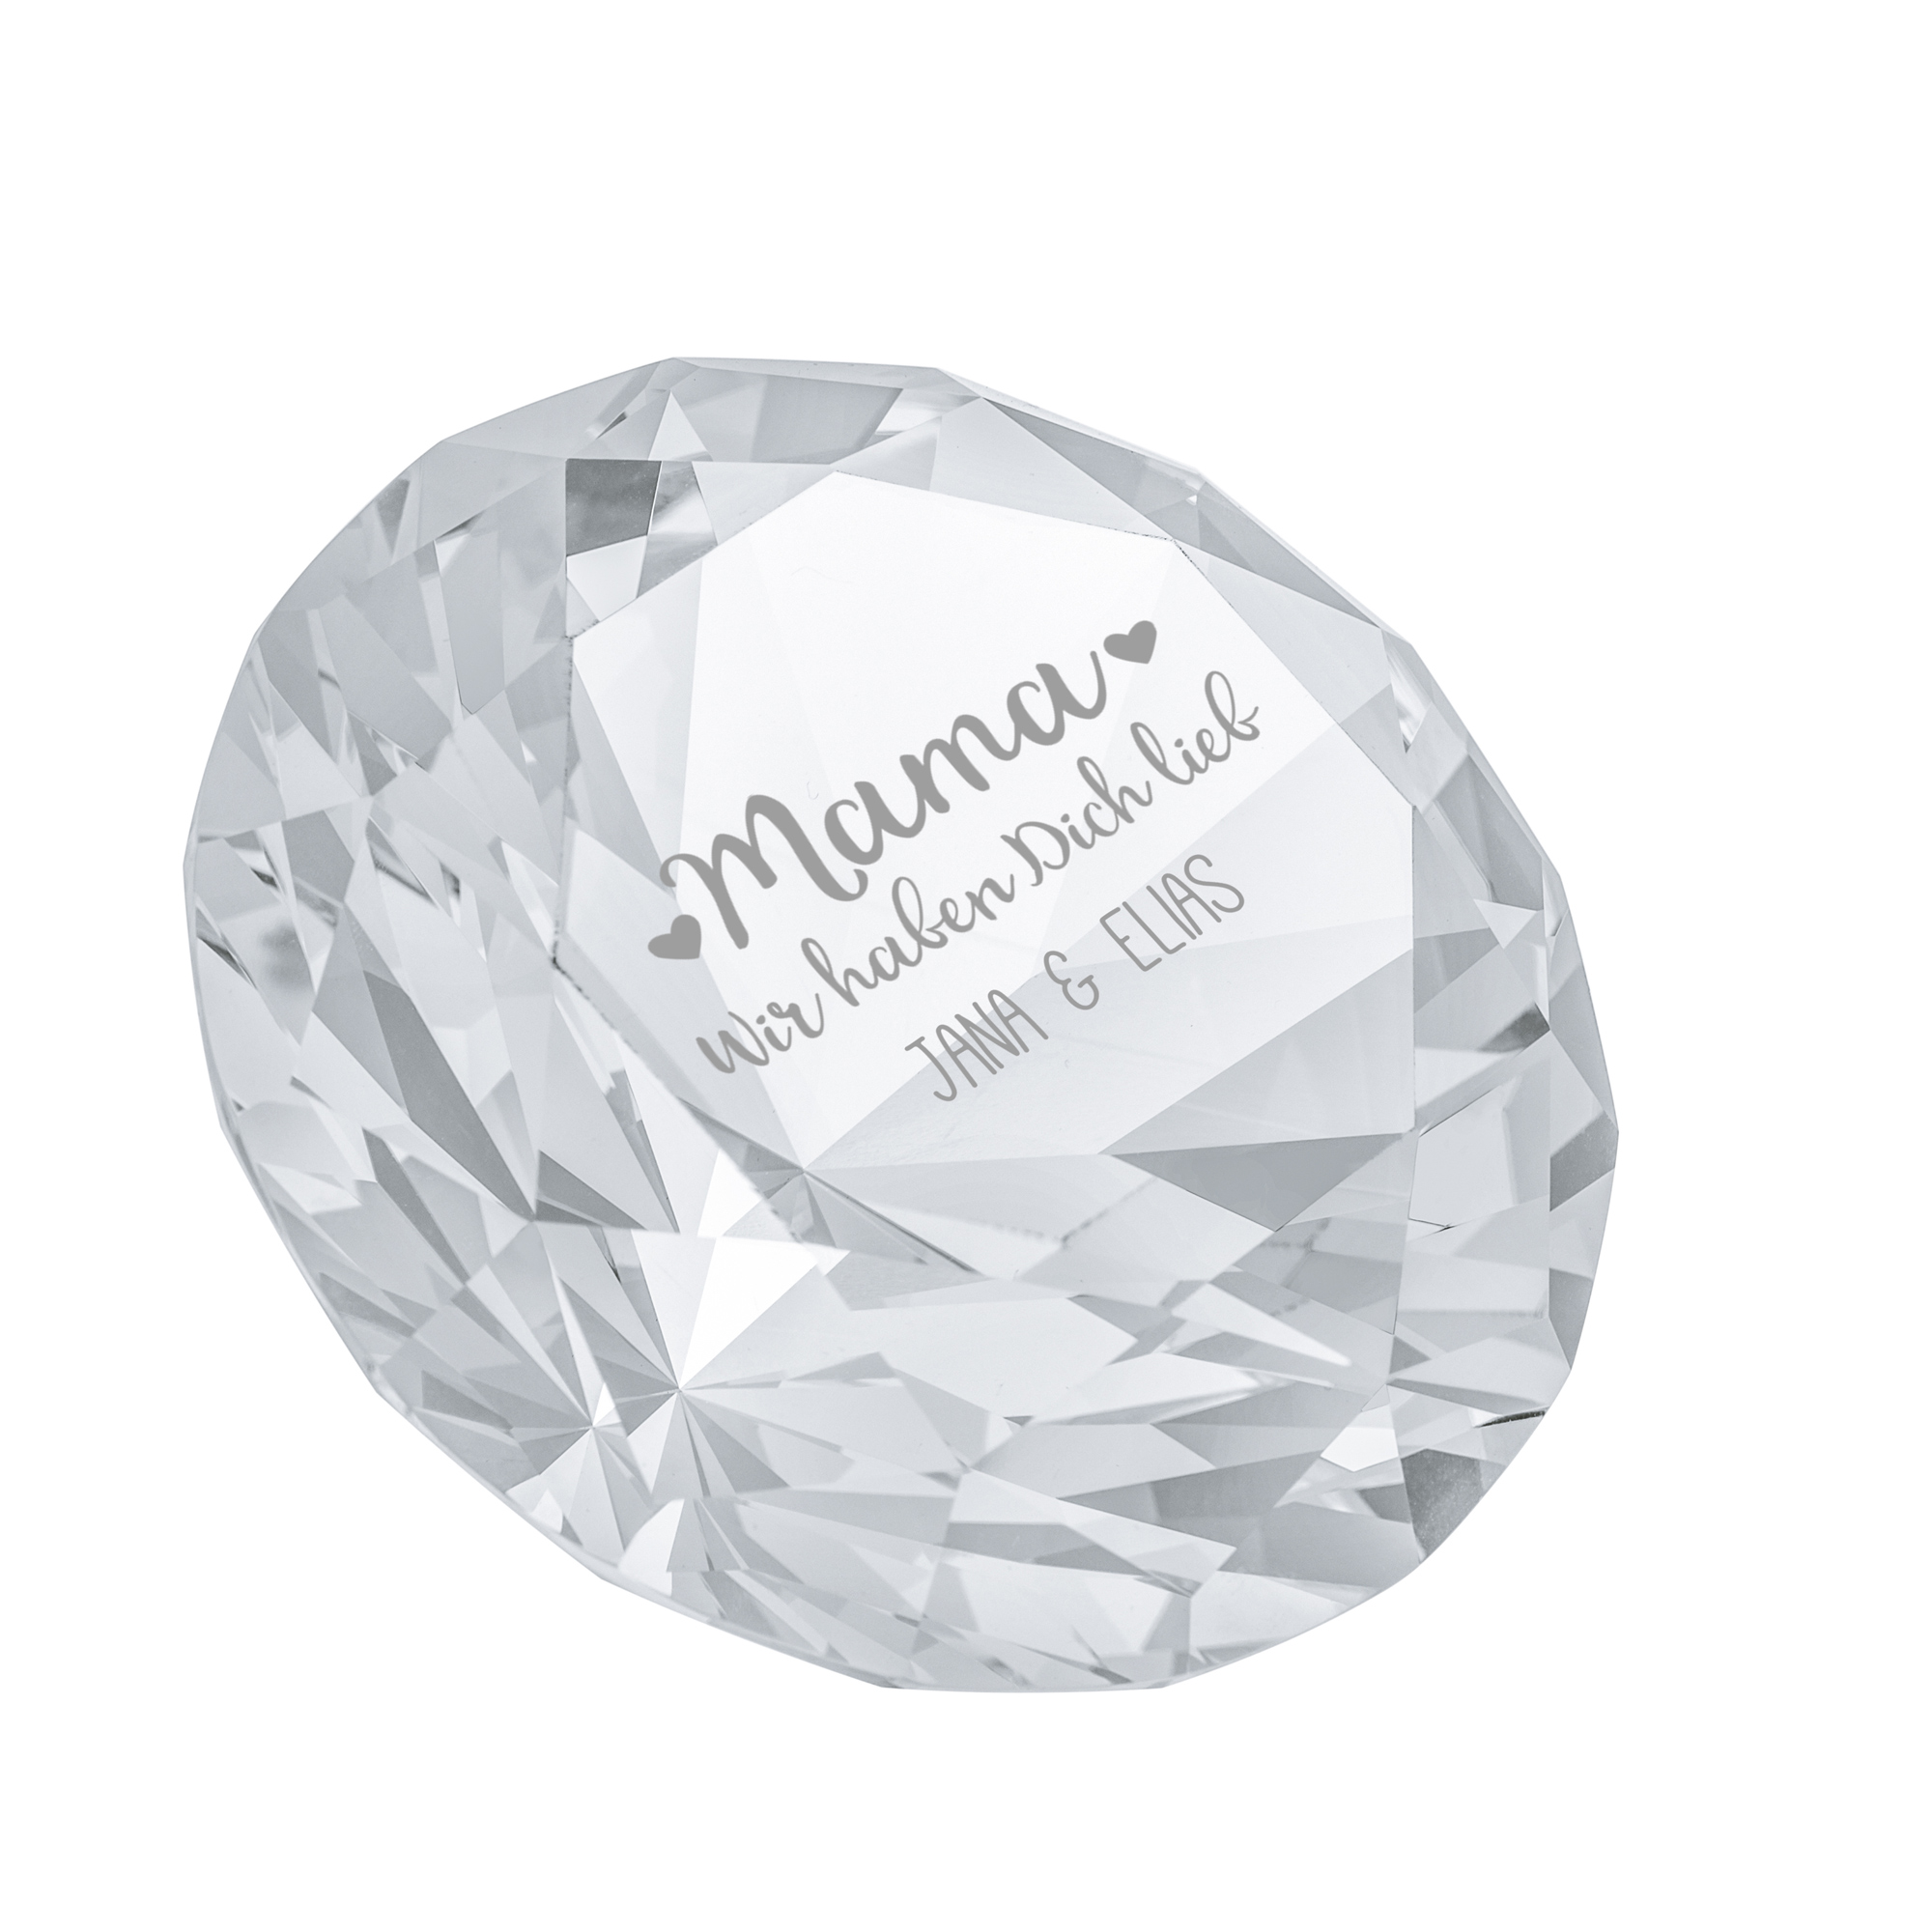 Kristall - Diamant - Mama, wir haben dich lieb - Personalisiert